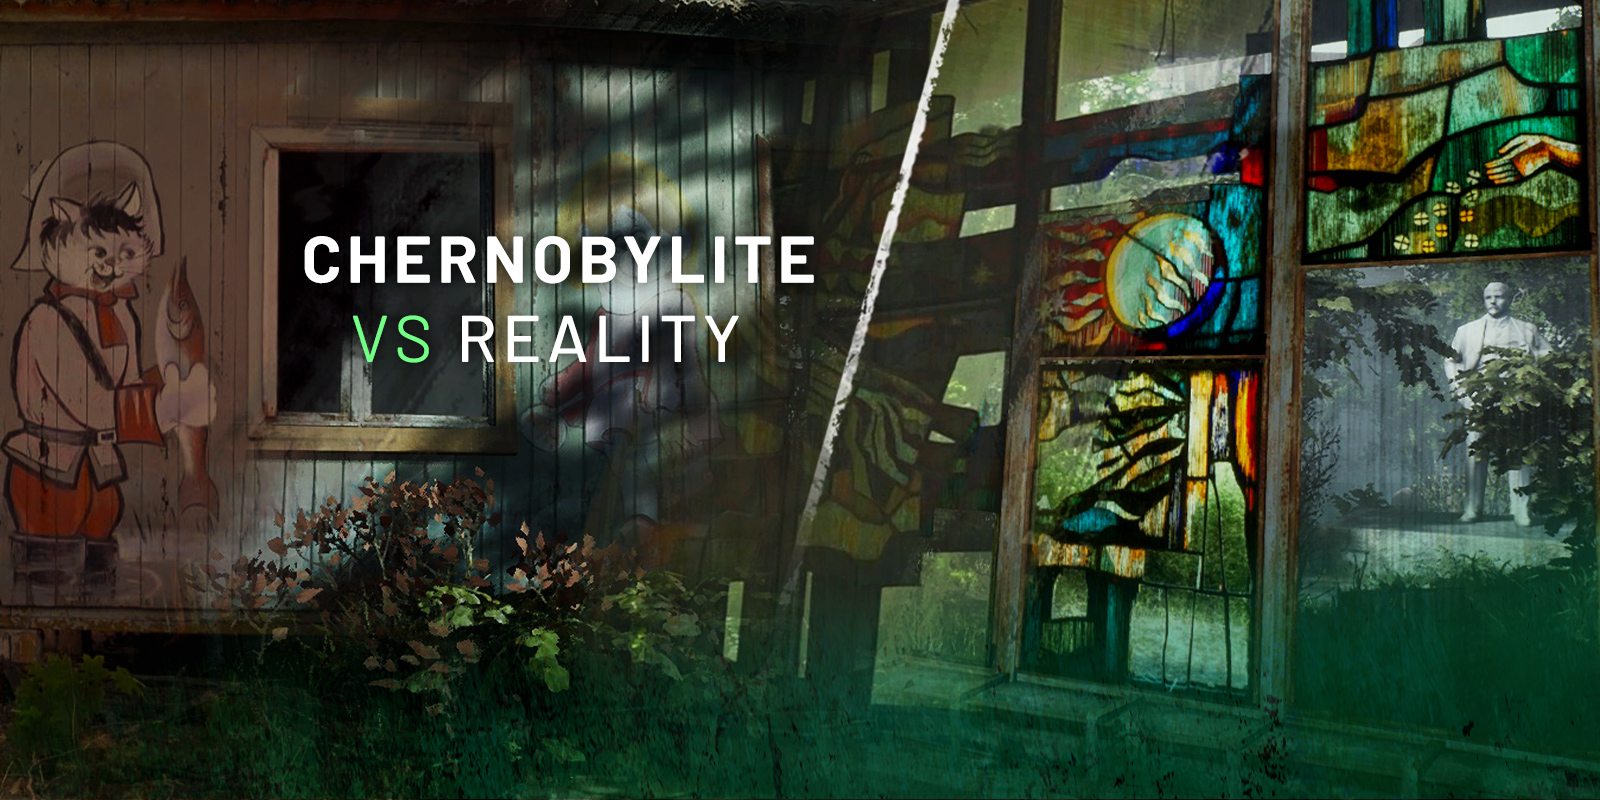 Chernobylite vs reality